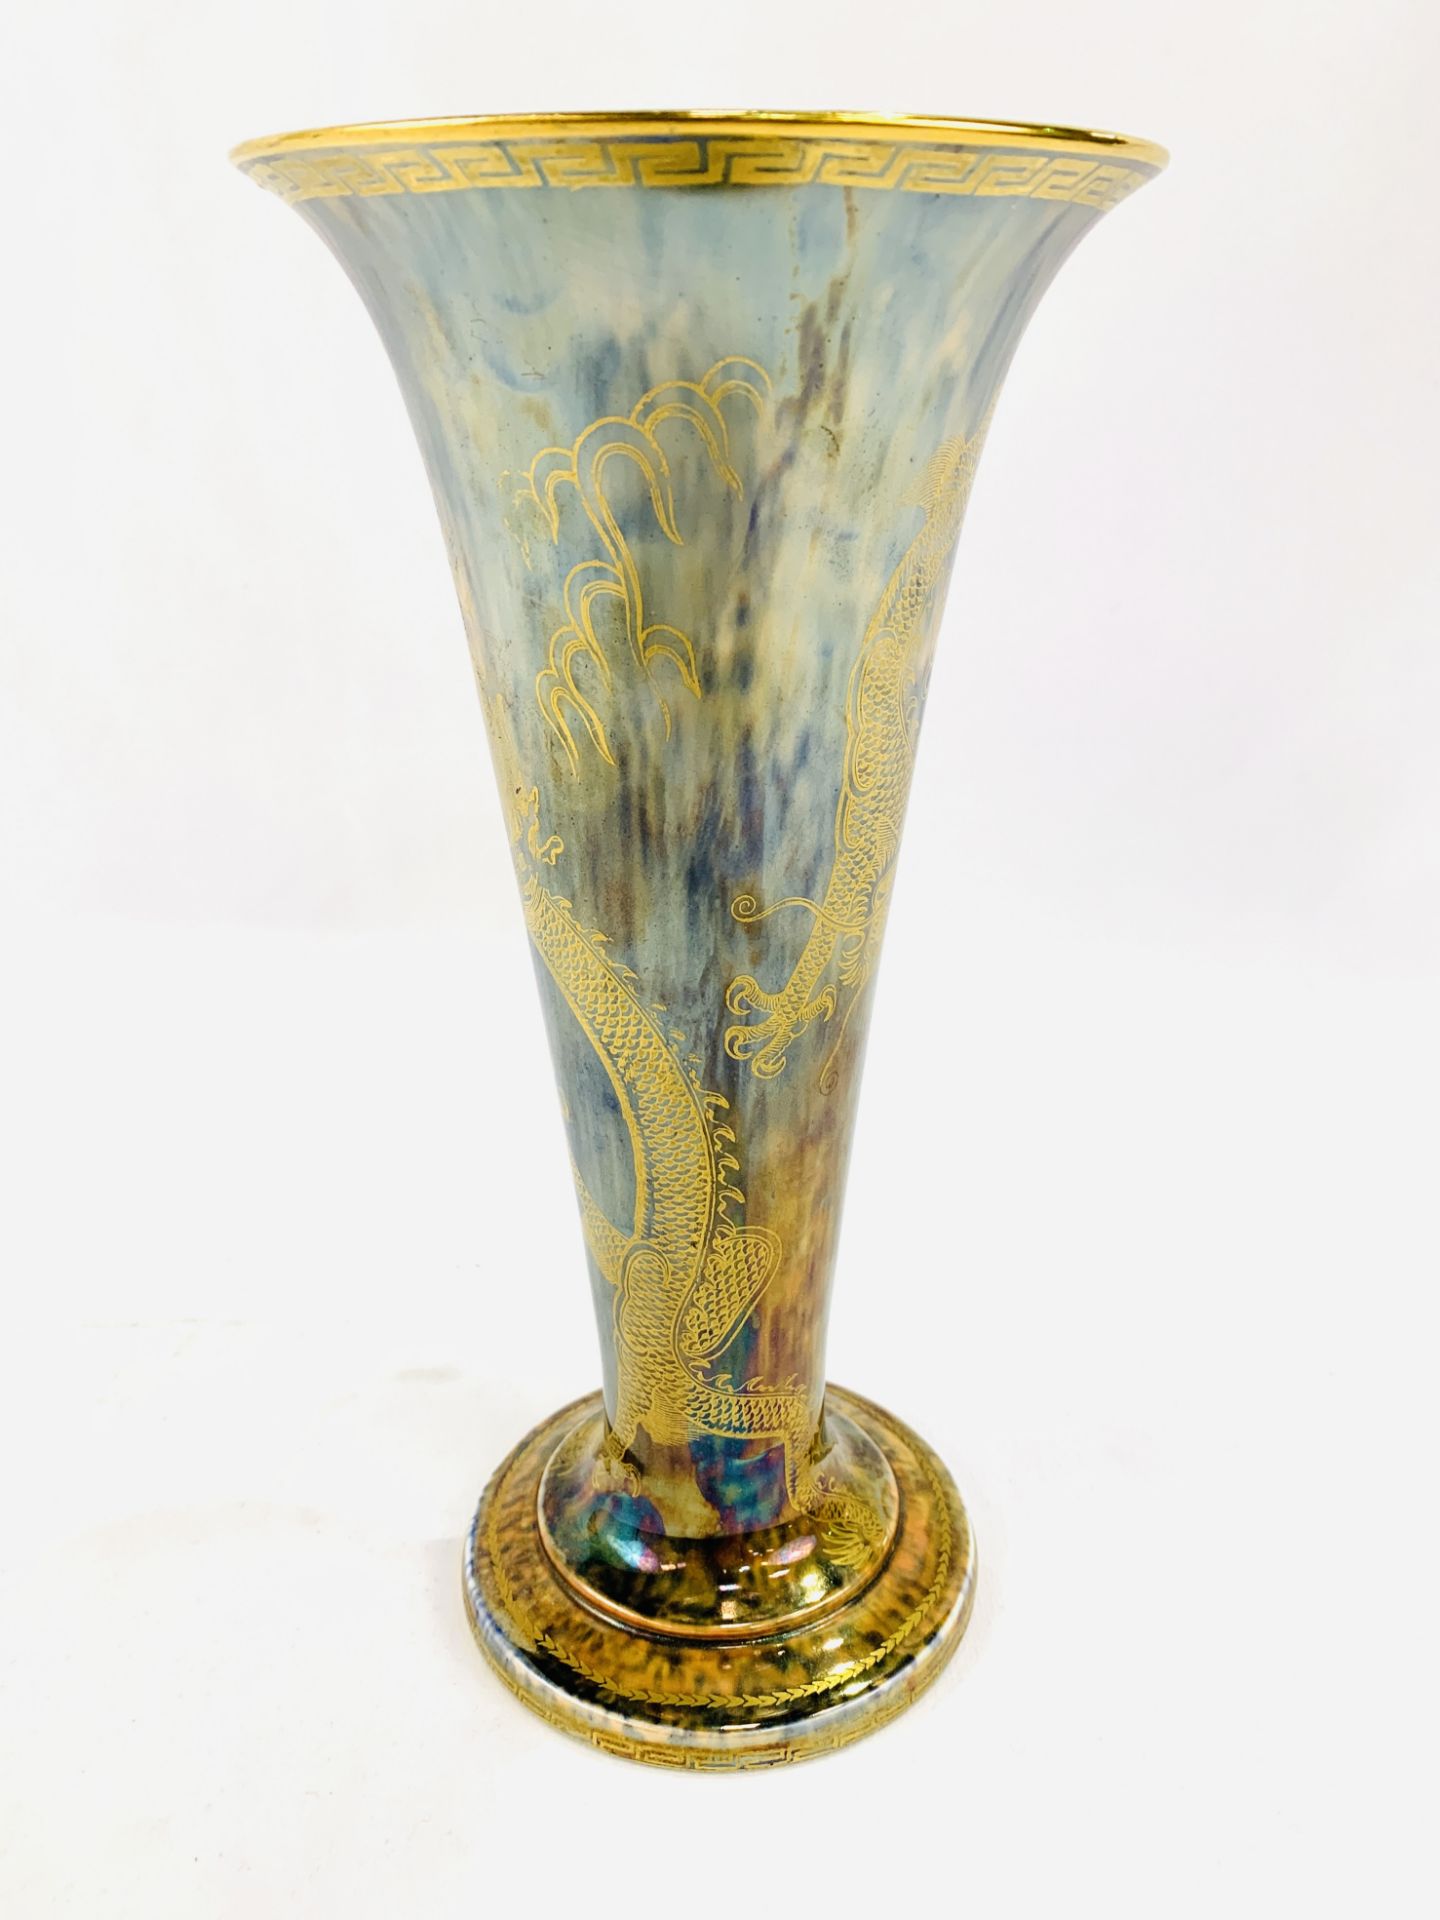 Wedgwood Fairyland lustre vase - Image 5 of 7